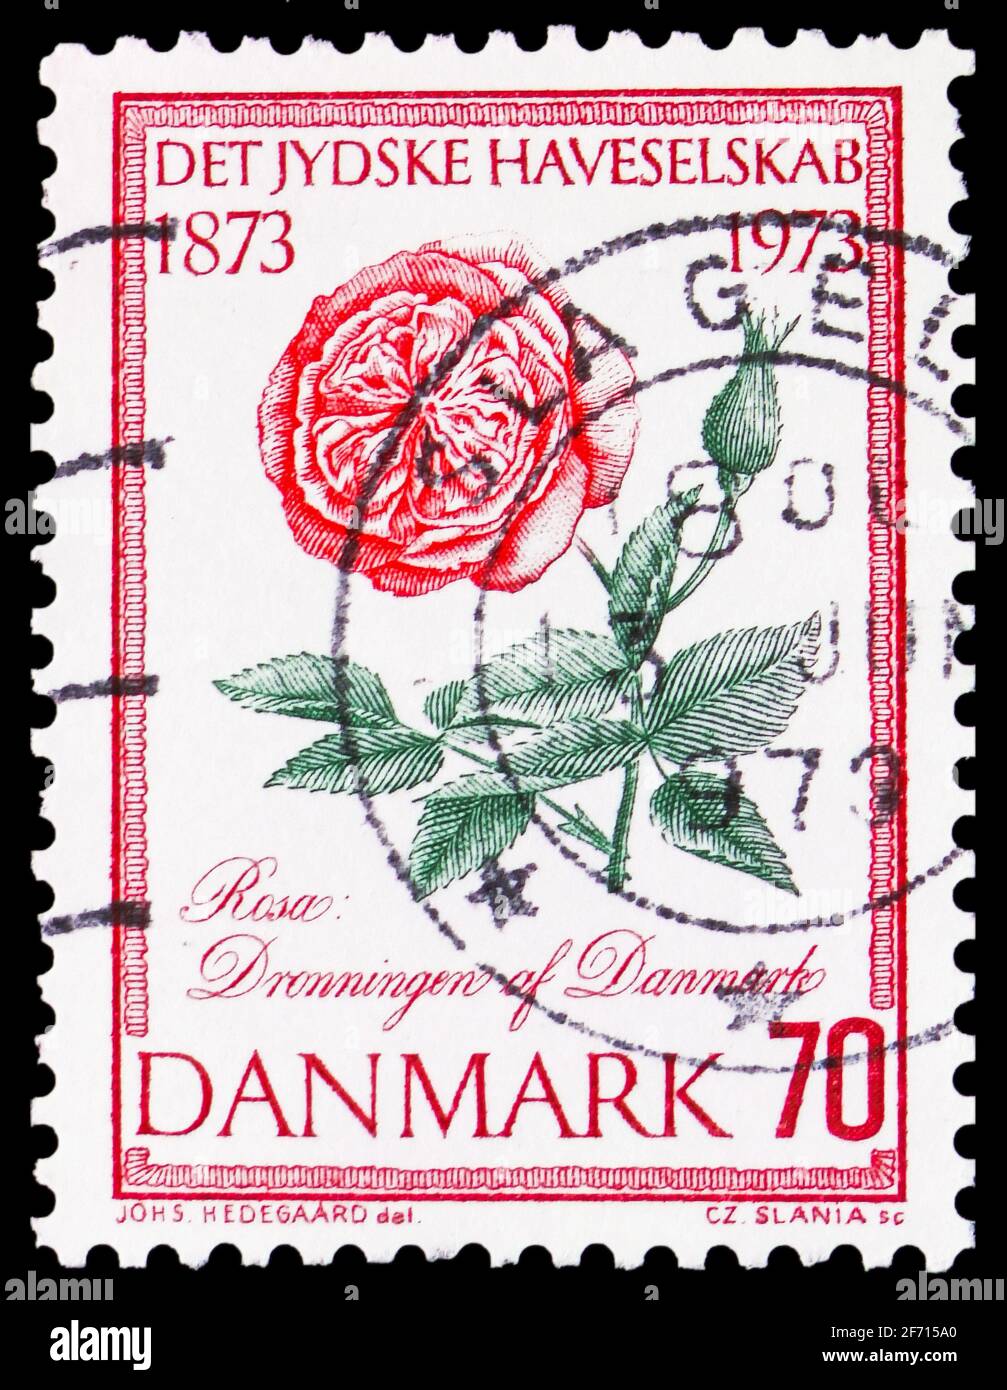 MOSKAU, RUSSLAND - 20. JANUAR 2021: Die in Dänemark gedruckte Briefmarke zeigt die Rose der Königin von Dänemark, Flora Serie, um 1973 Stockfoto